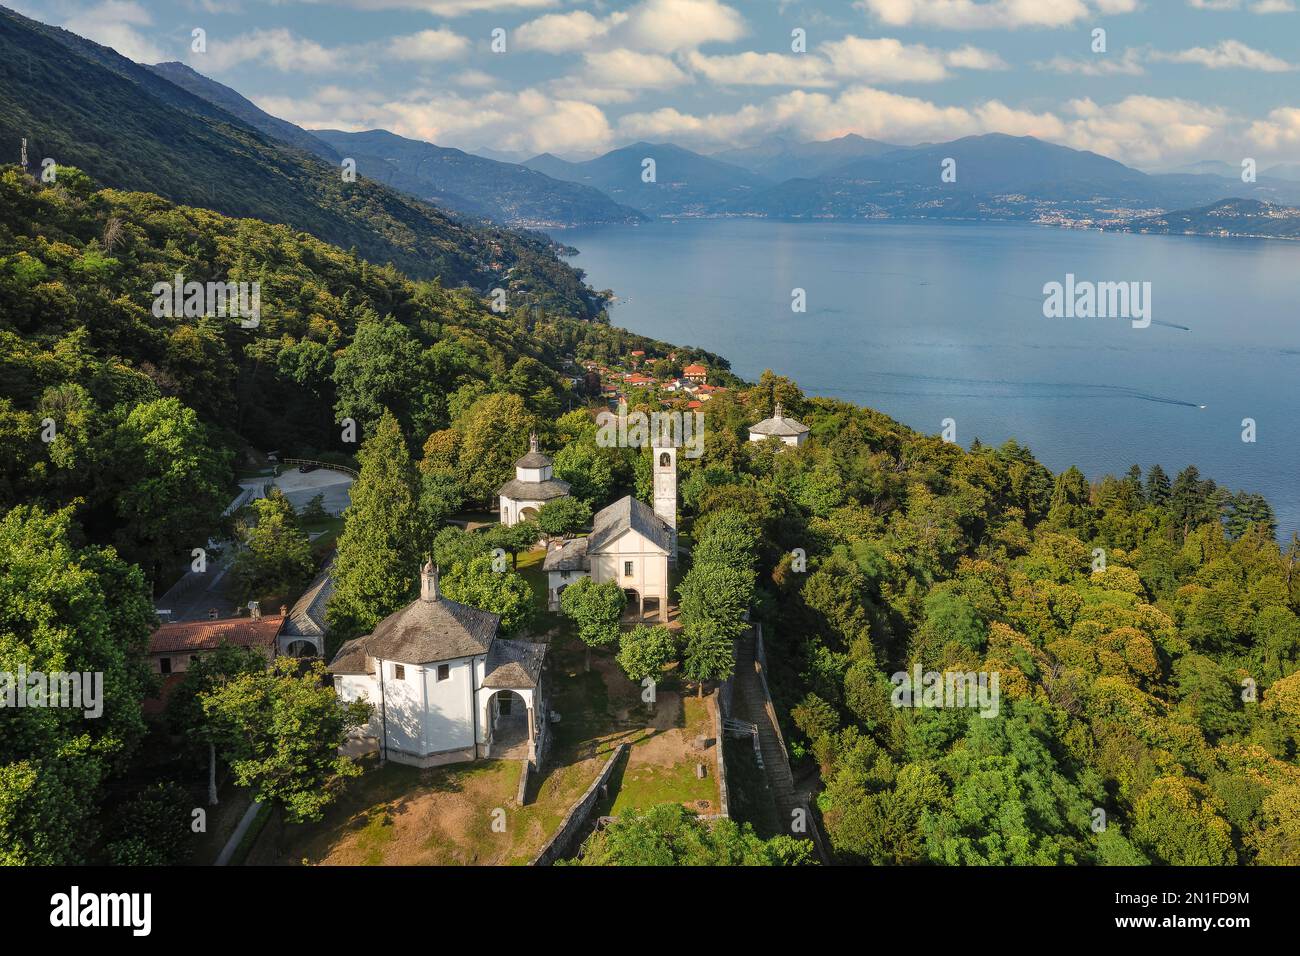 Sacro Monte di Ghiffa, Ghiffa, UNESCO-Weltkulturerbe, Lago Maggiore, Piemont, italienische Seen, Italien, Europa Stockfoto